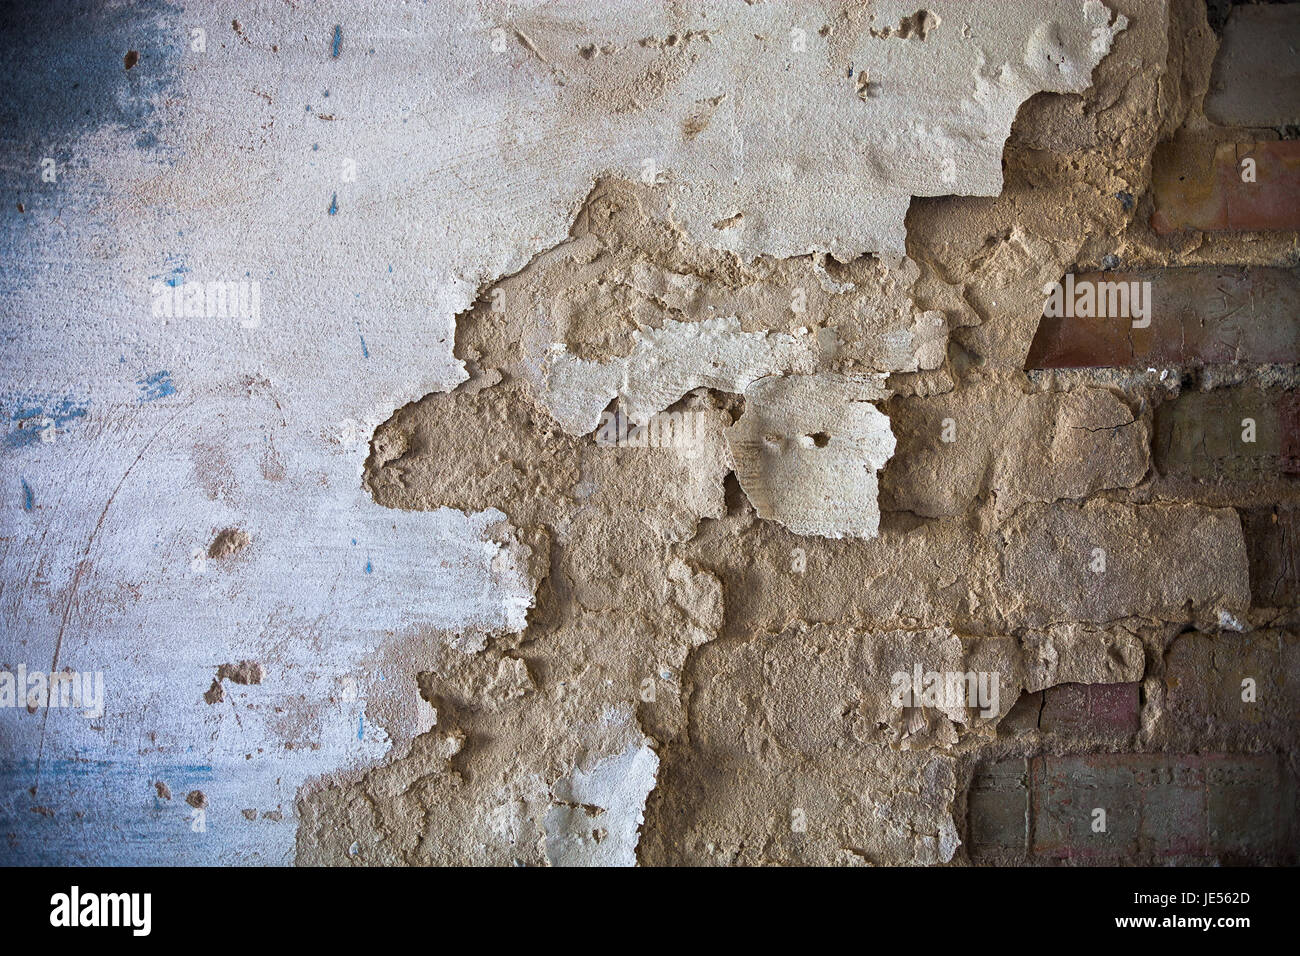 Damaged whitewashed plaster on the brick wall. Stock Photo